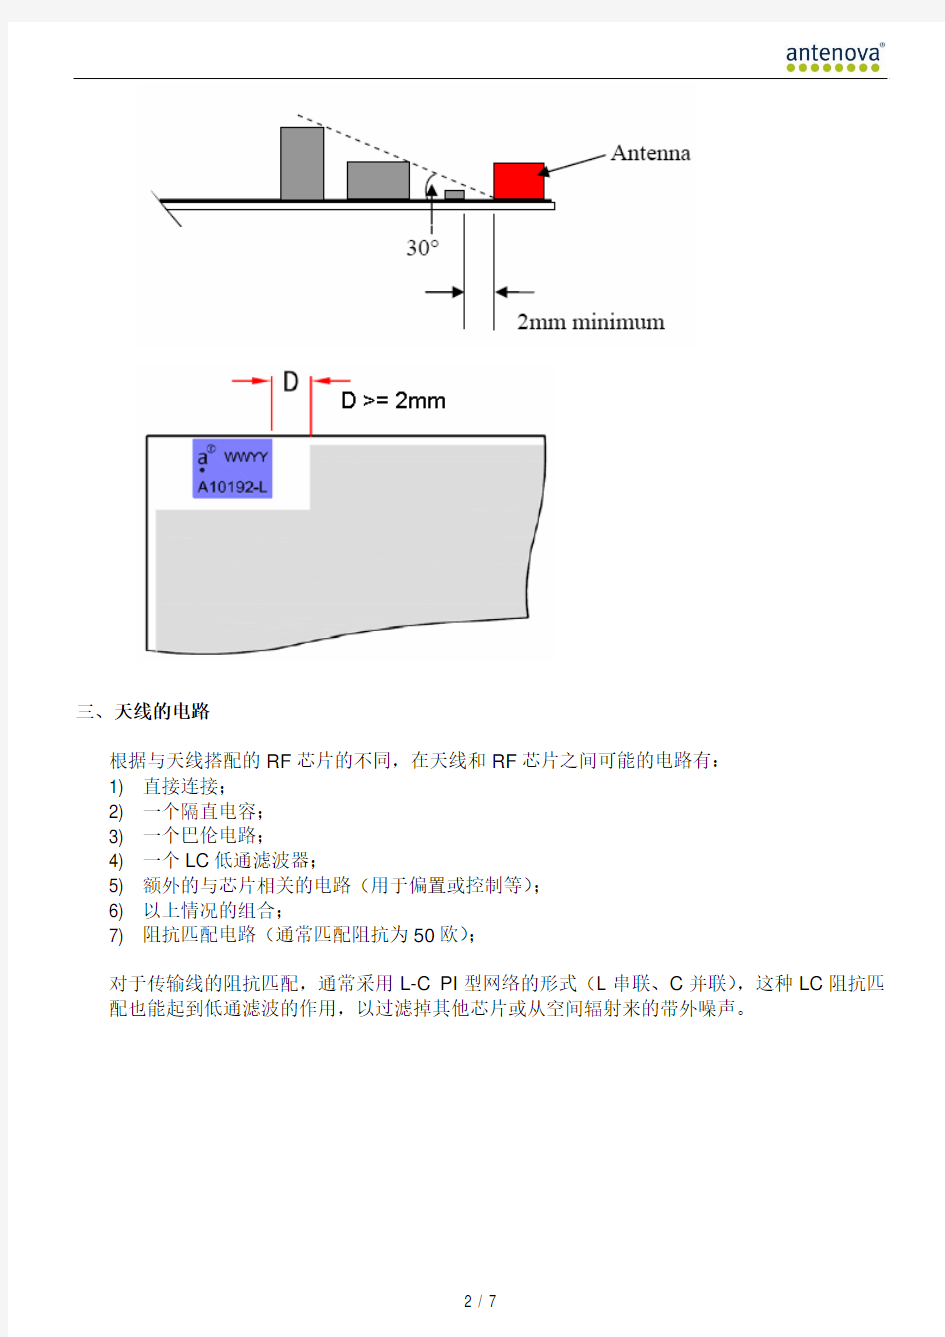 WiFi蓝牙(A10192)天线设计指南